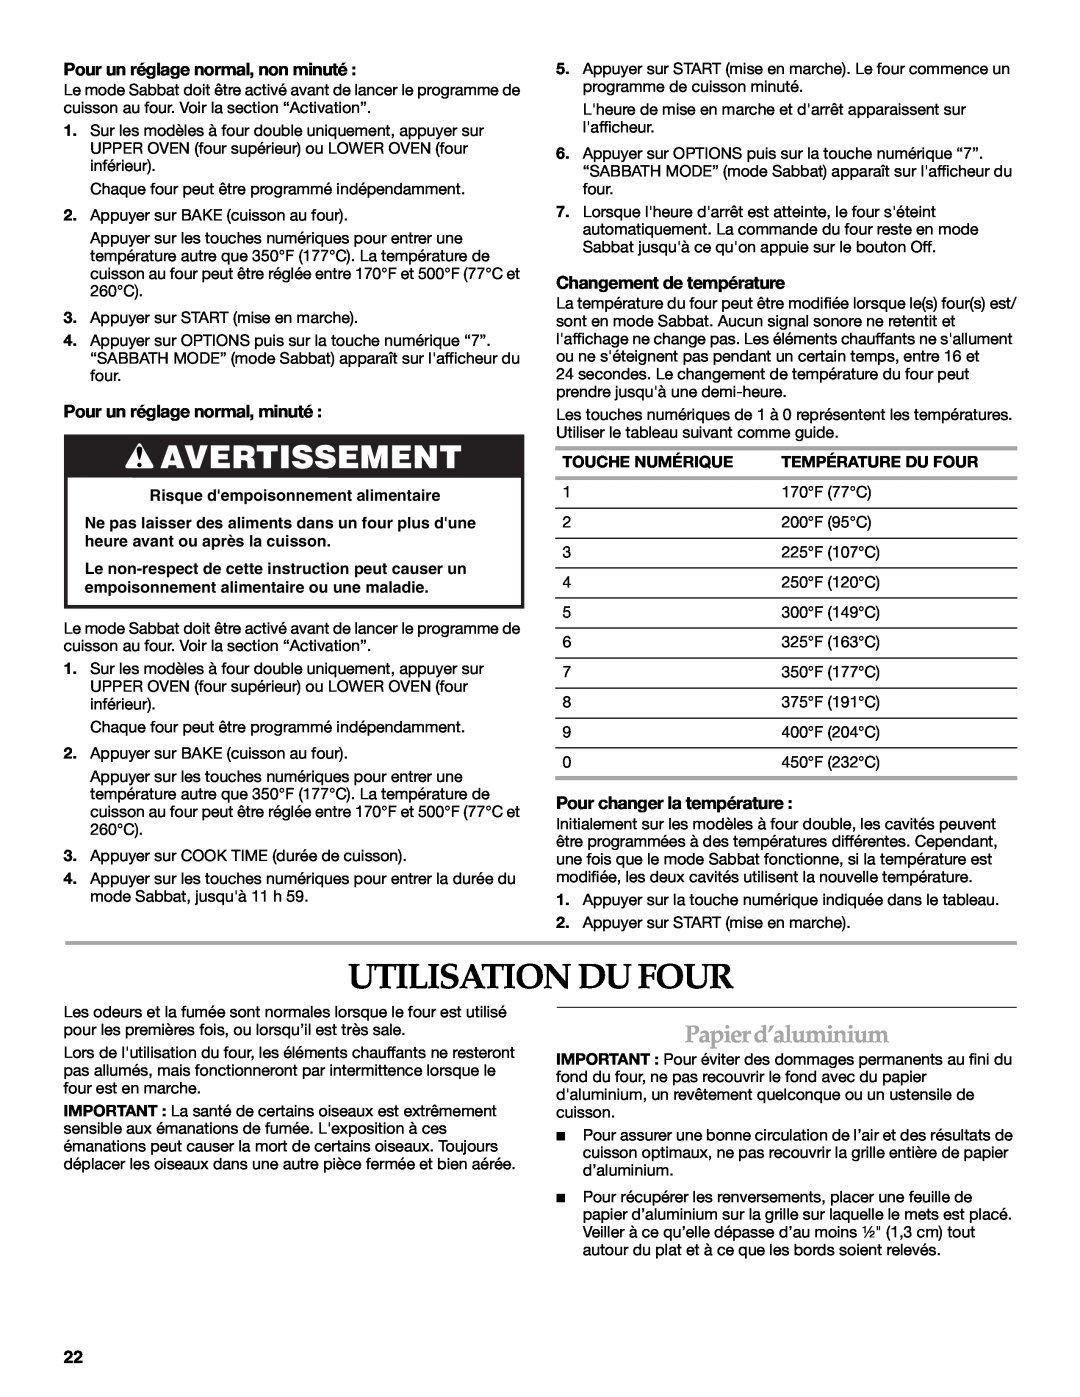 KitchenAid KEBK171 manual Utilisation Du Four, Avertissement, Papierd’aluminium, Pour un réglage normal, non minuté 